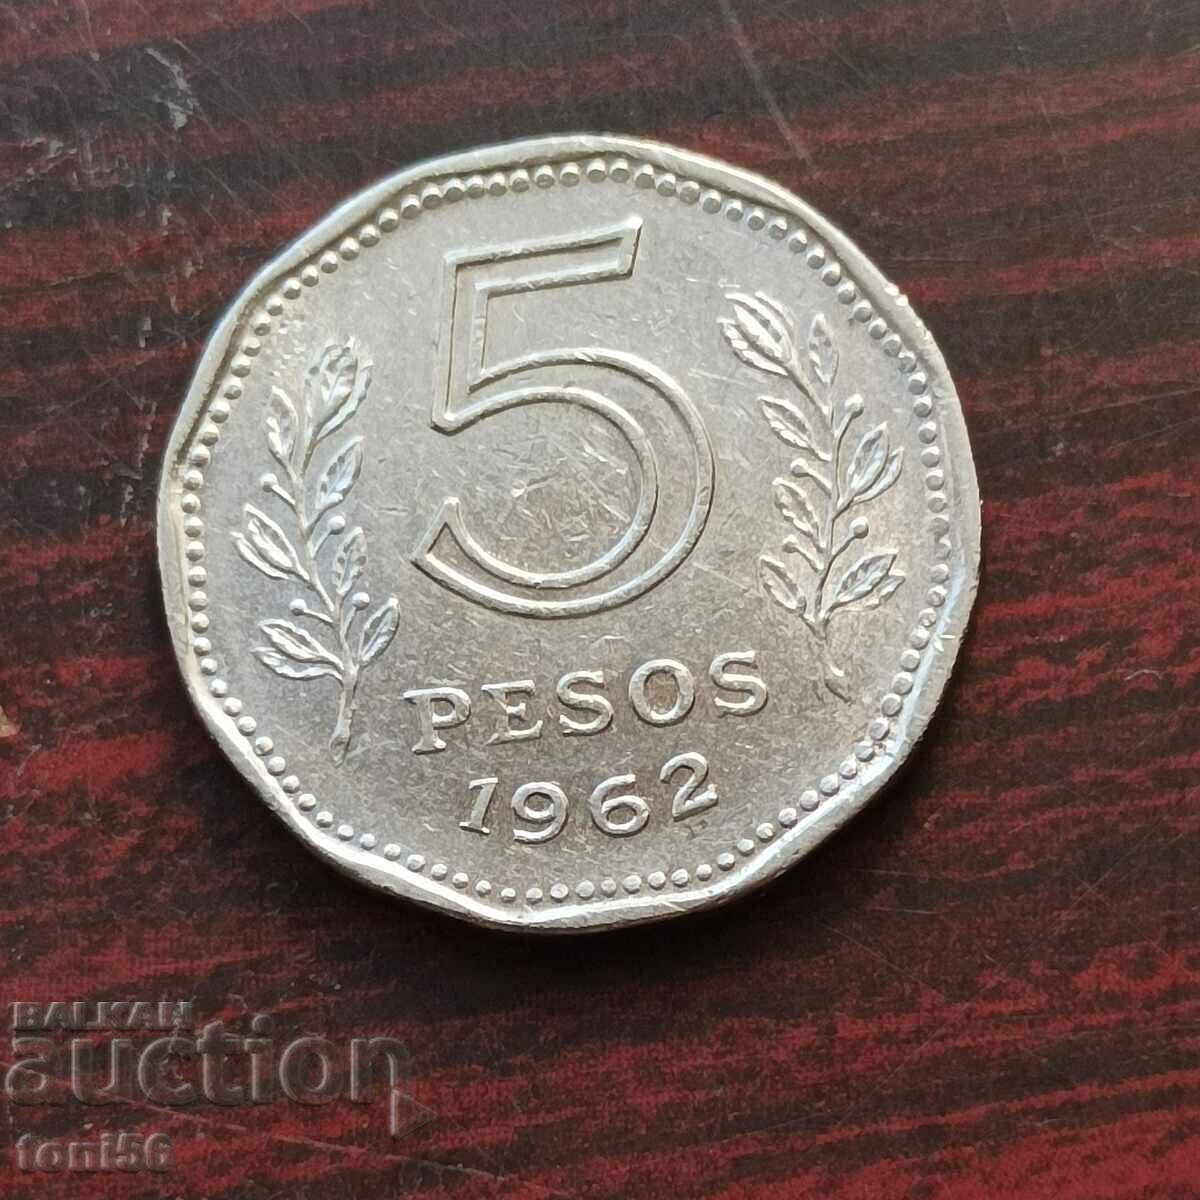 Argentina 5 pesos 1962 UNC